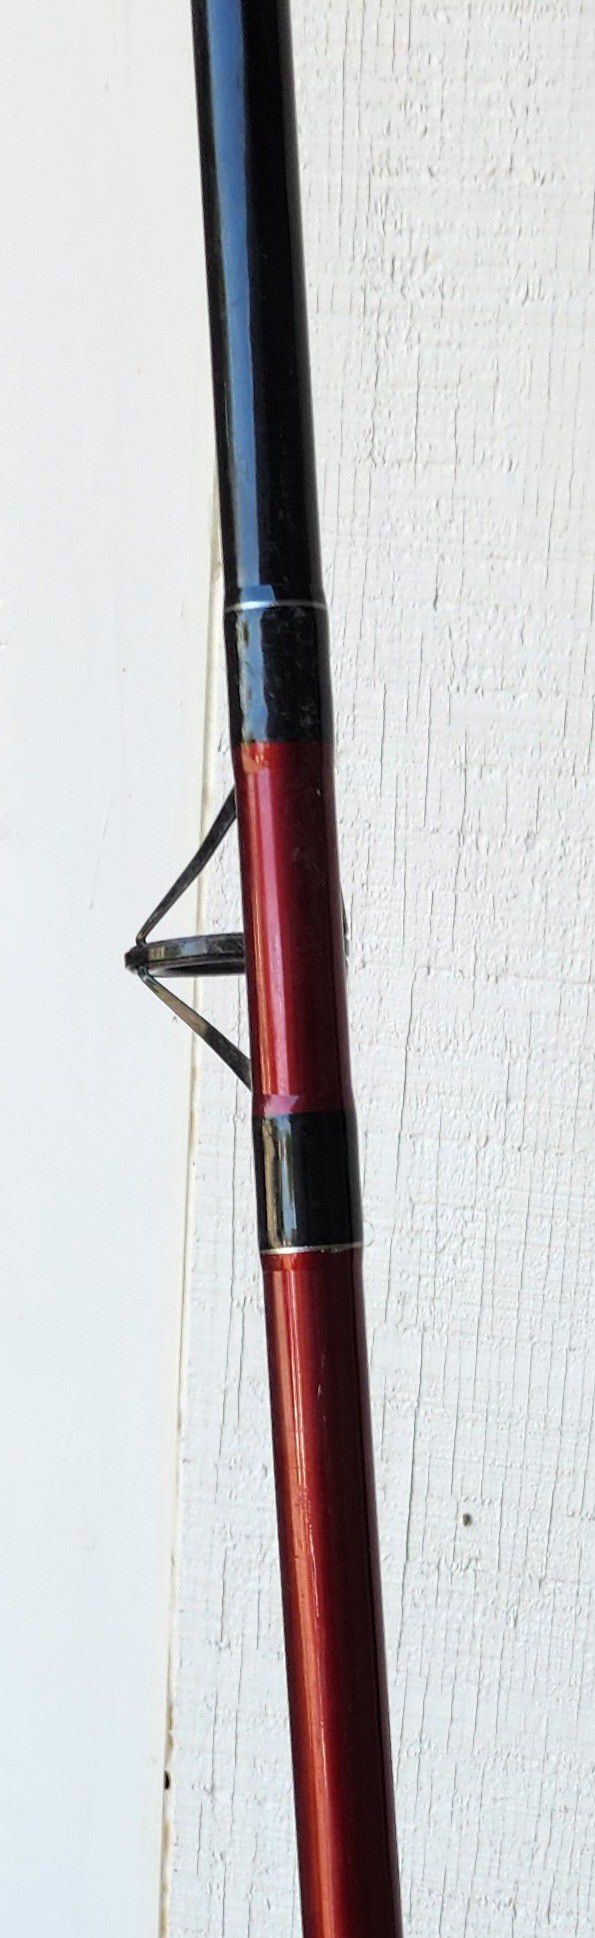 Red Metal Salt Water Rod & Reel by PINNACLE. for Sale in Fort Worth, TX -  OfferUp